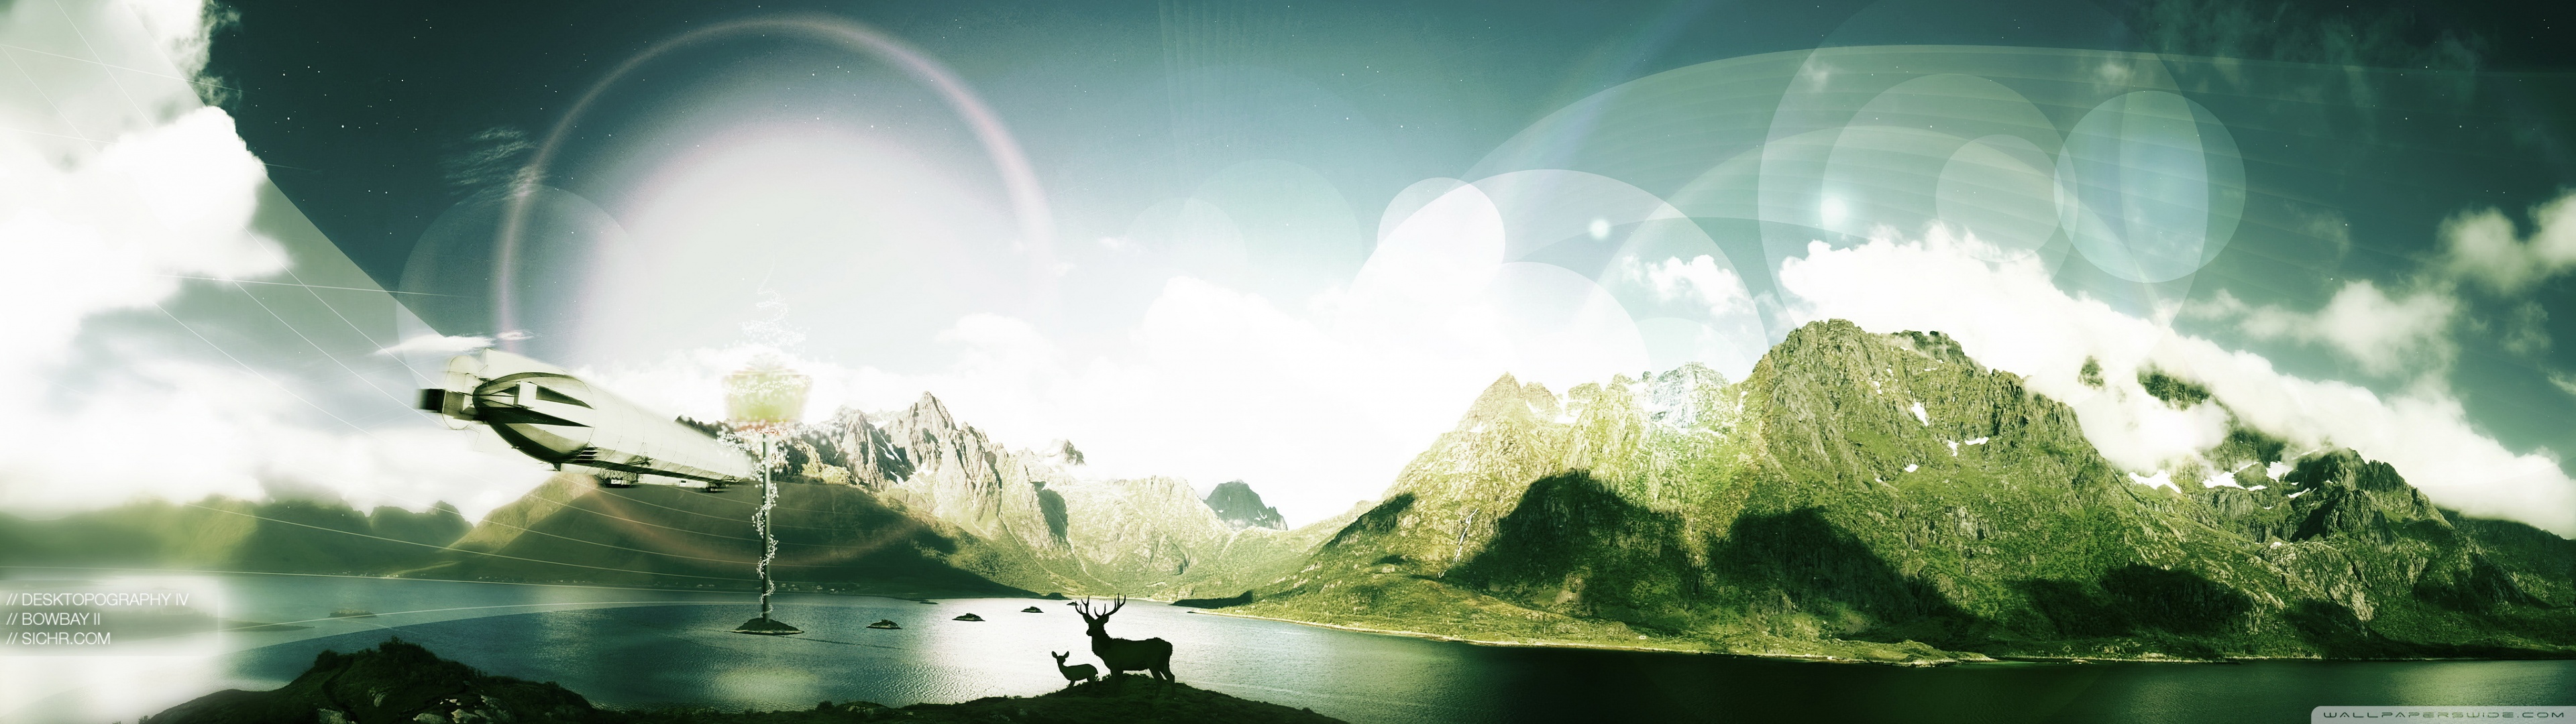 mountains, landscapes, nature - desktop wallpaper